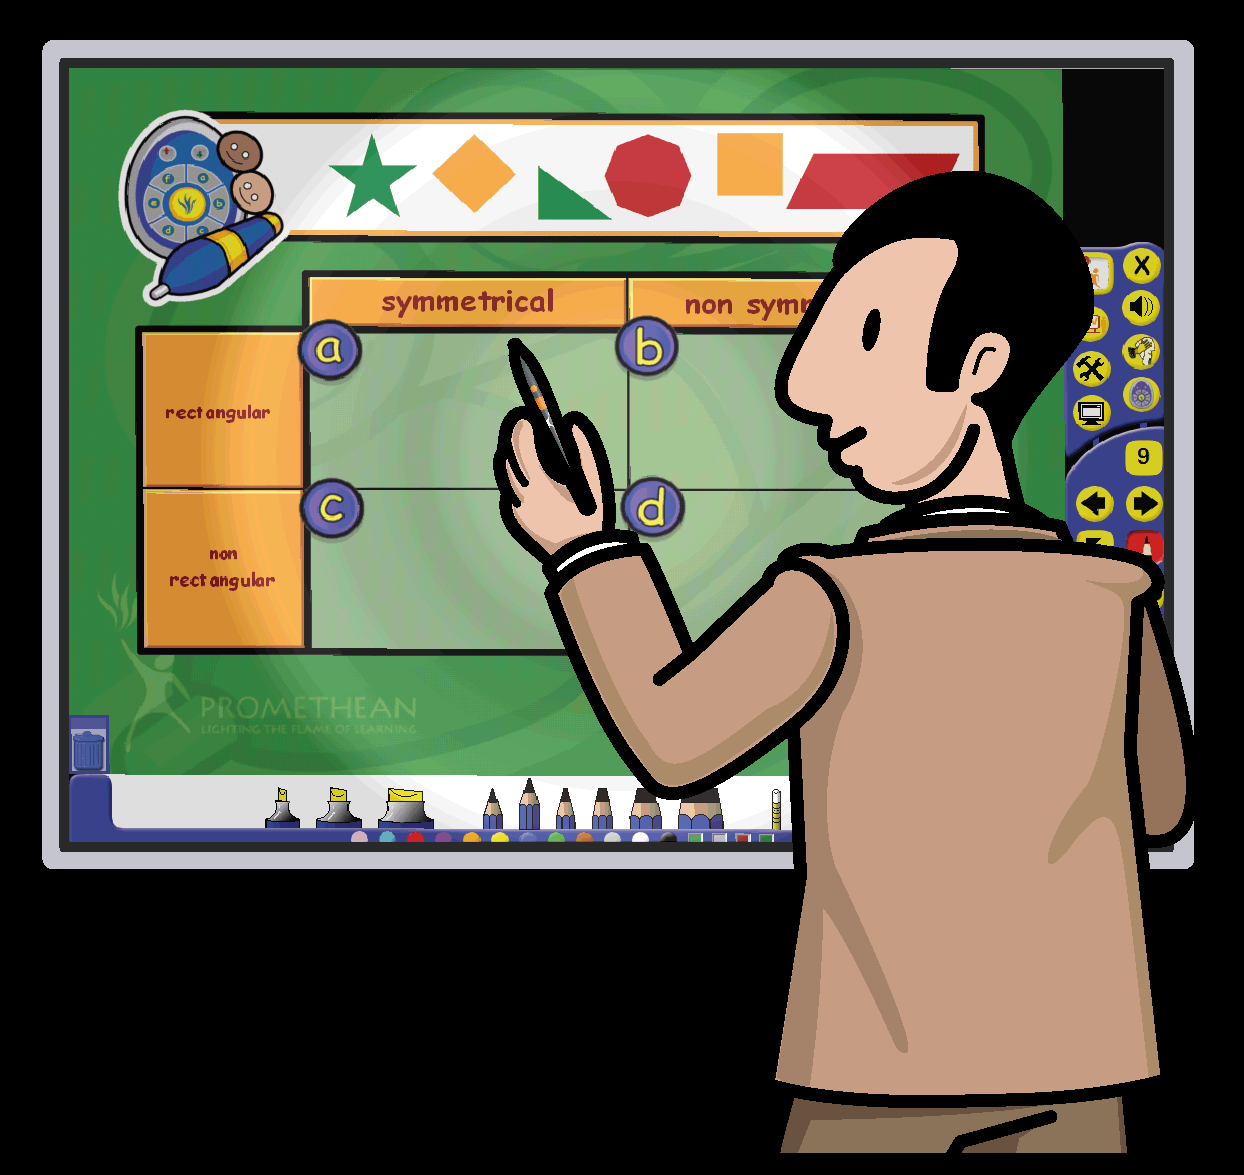 Úvod Pomocí aplikace ActivInspire můžete provádět následující činnosti: Vyučovat stejně jako pomocí tradiční tabule a křídy, měnit tempo prezentací a předvádět v hodinách praktické ukázky.